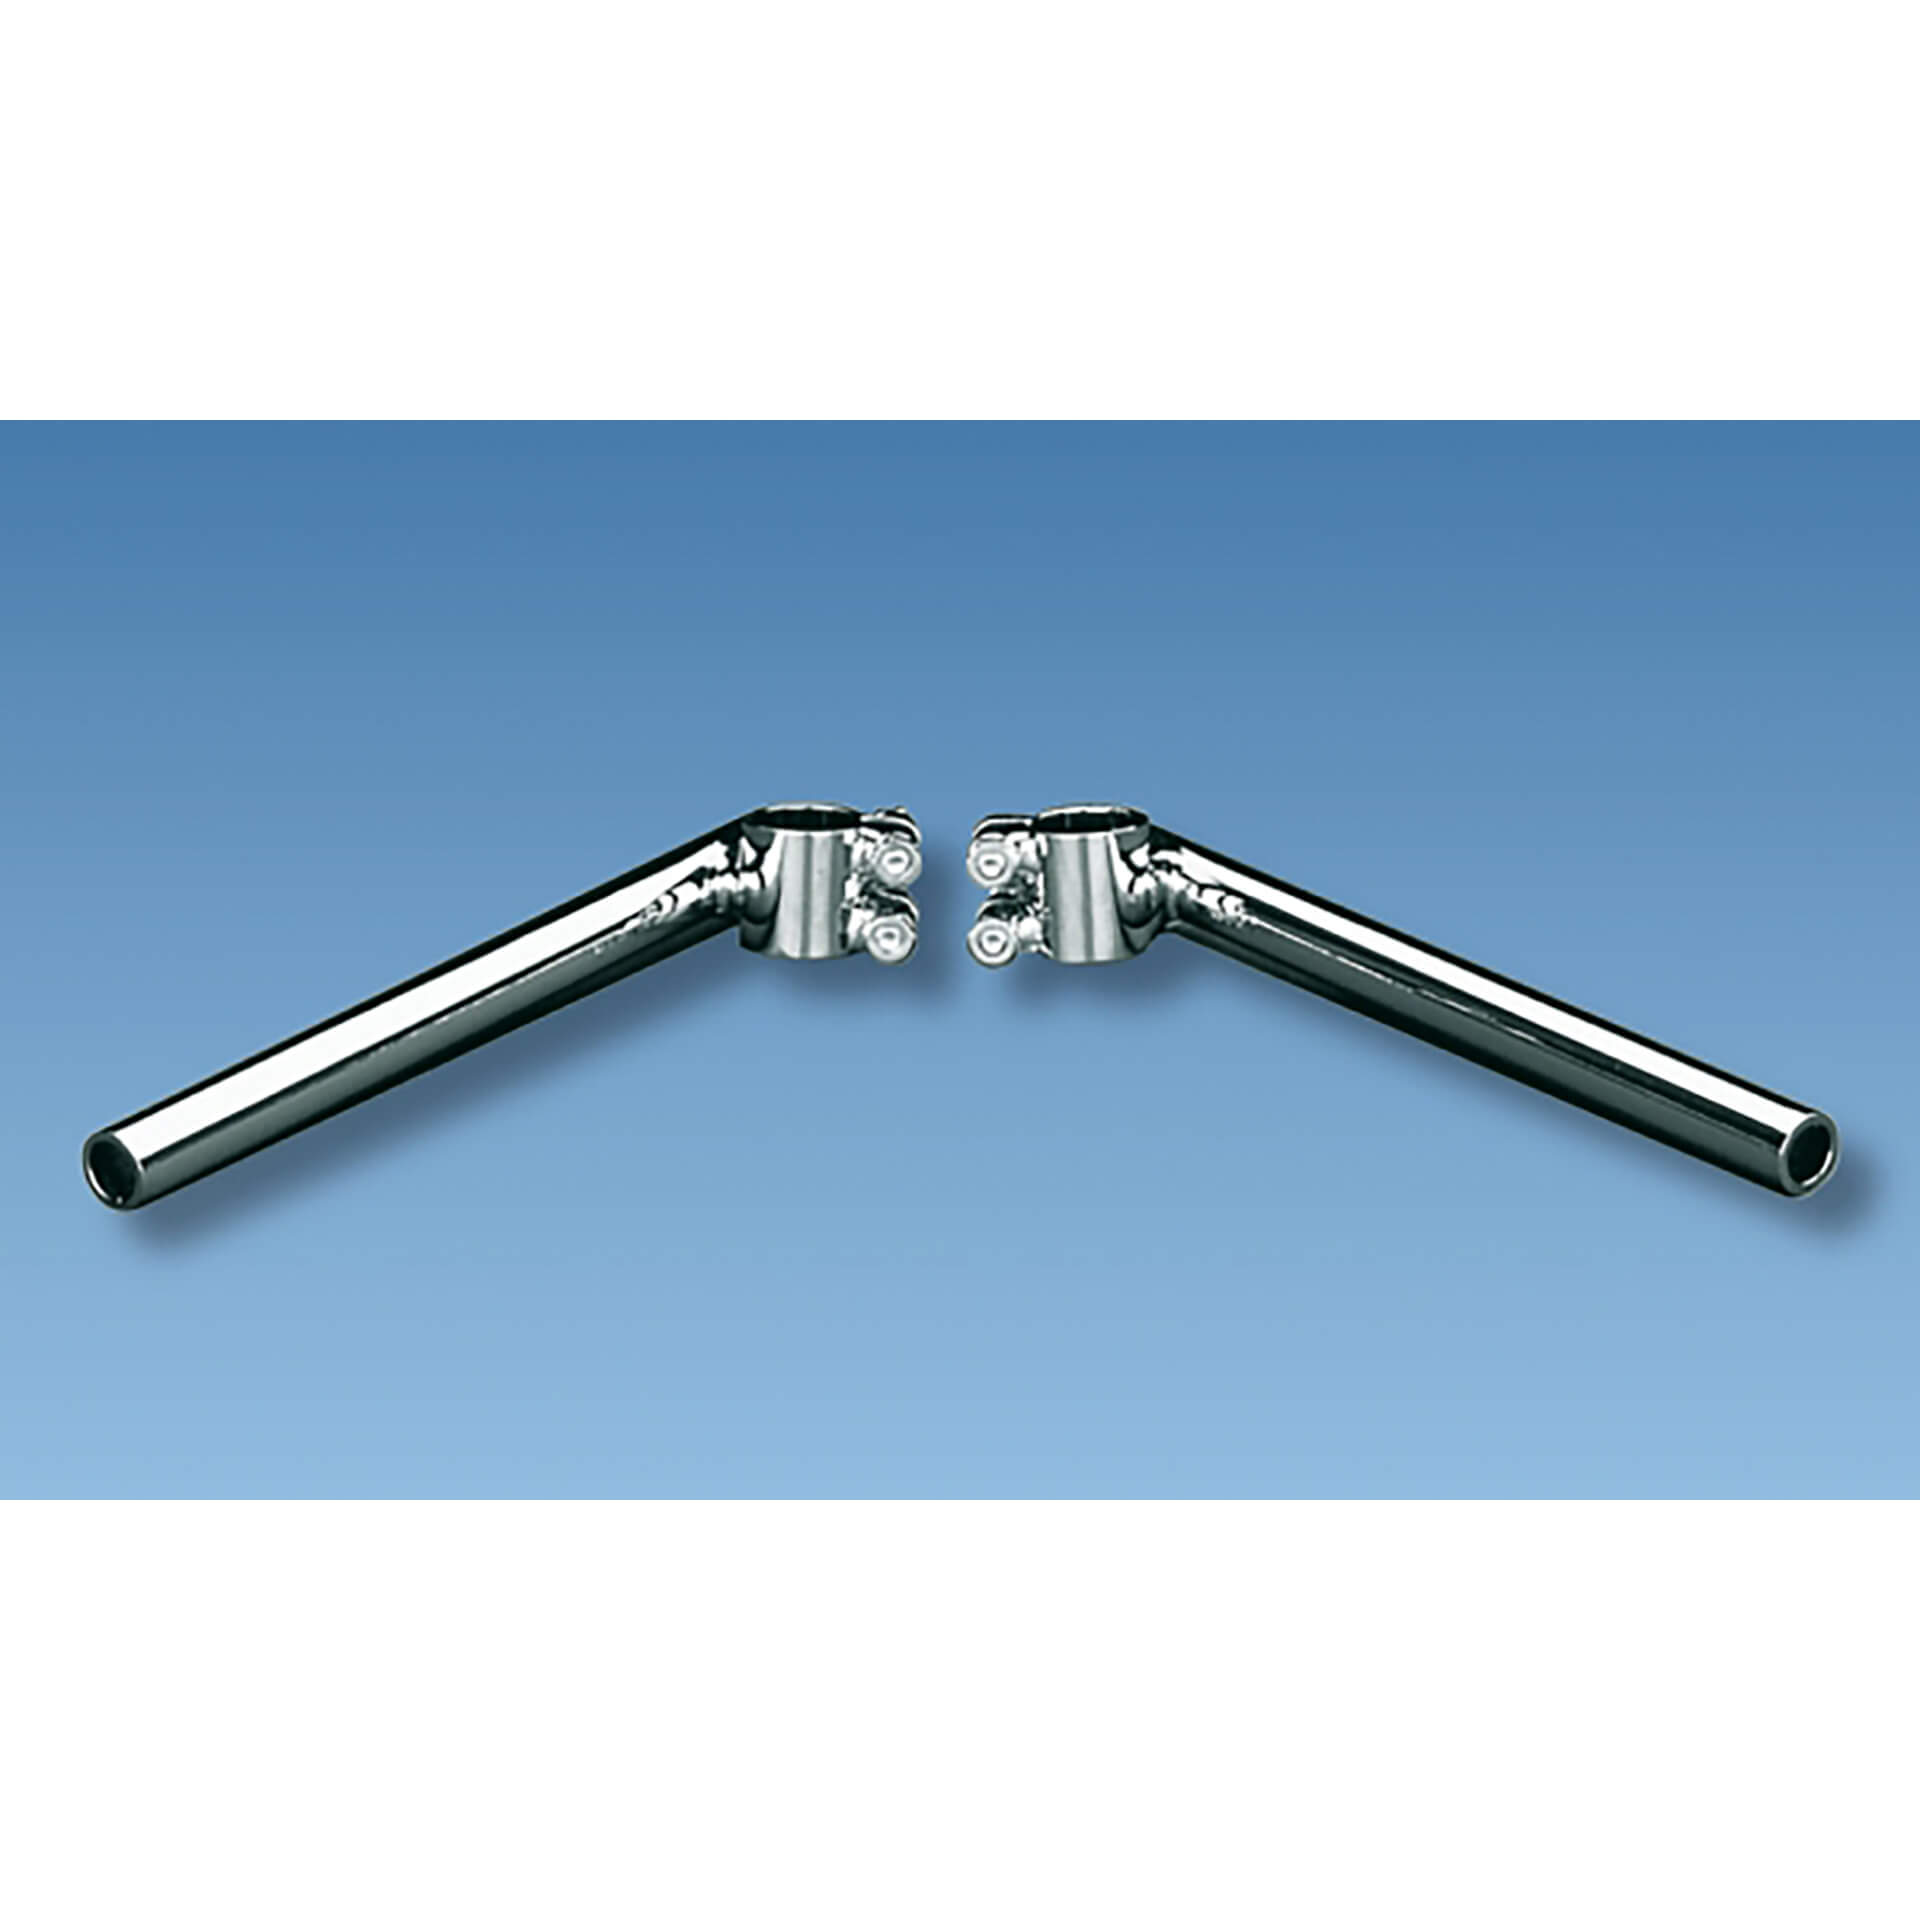 fehling Stump handlebar assembly fork stand tube, length 265 mm